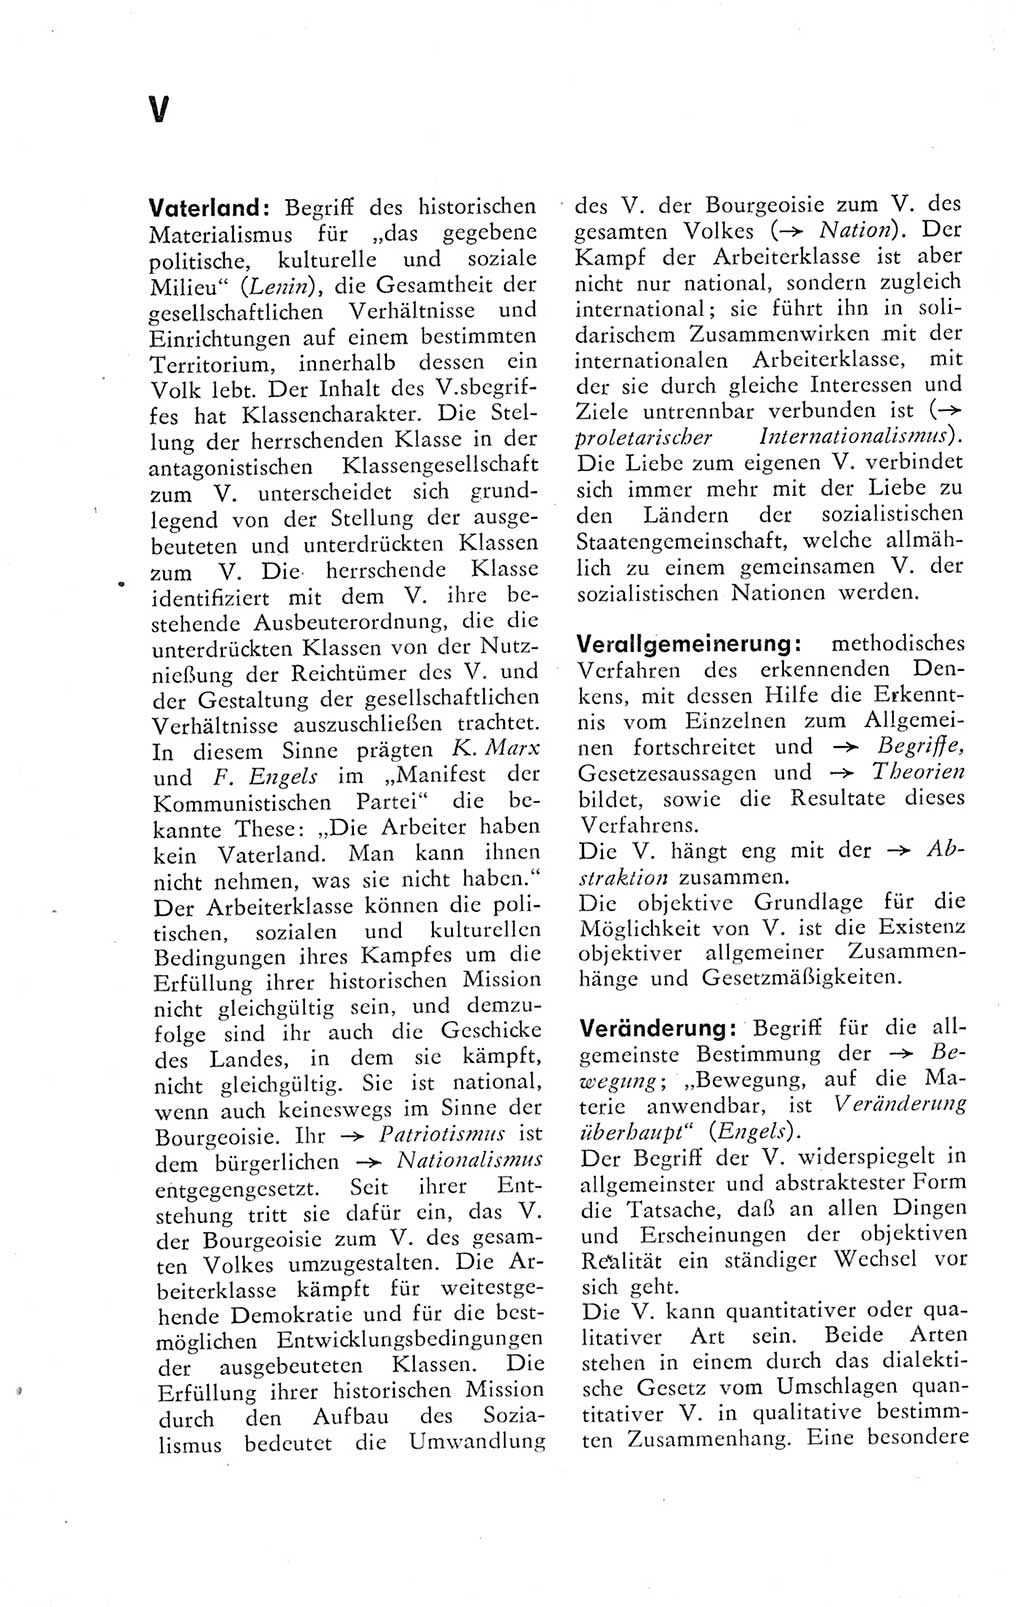 Kleines Wörterbuch der marxistisch-leninistischen Philosophie [Deutsche Demokratische Republik (DDR)] 1974, Seite 288 (Kl. Wb. ML Phil. DDR 1974, S. 288)